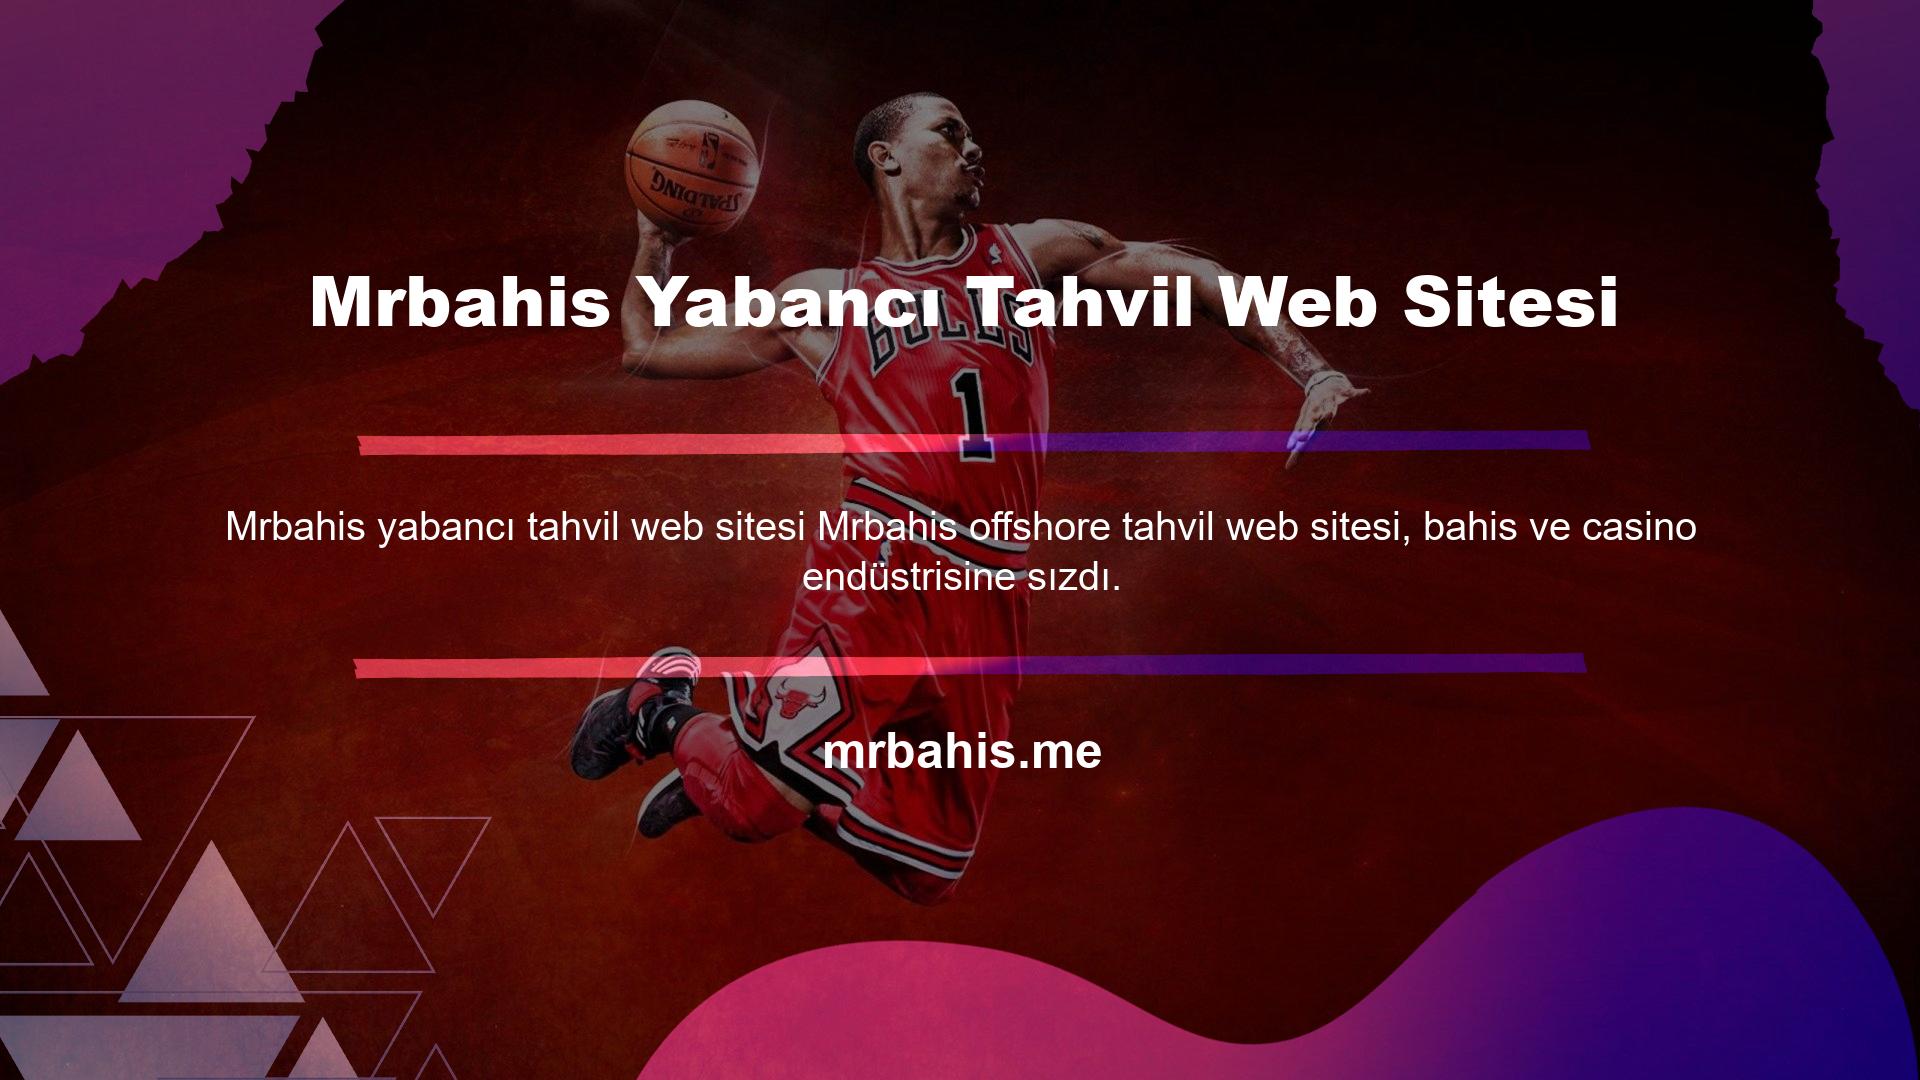 Genç ve deneyimli bir ekip tarafından oluşturulan bir web sitesi olan Mrbahis markası hızla büyüyerek Türkiye'de dünyanın en çok kullanılan web sitelerinden biri haline geldi